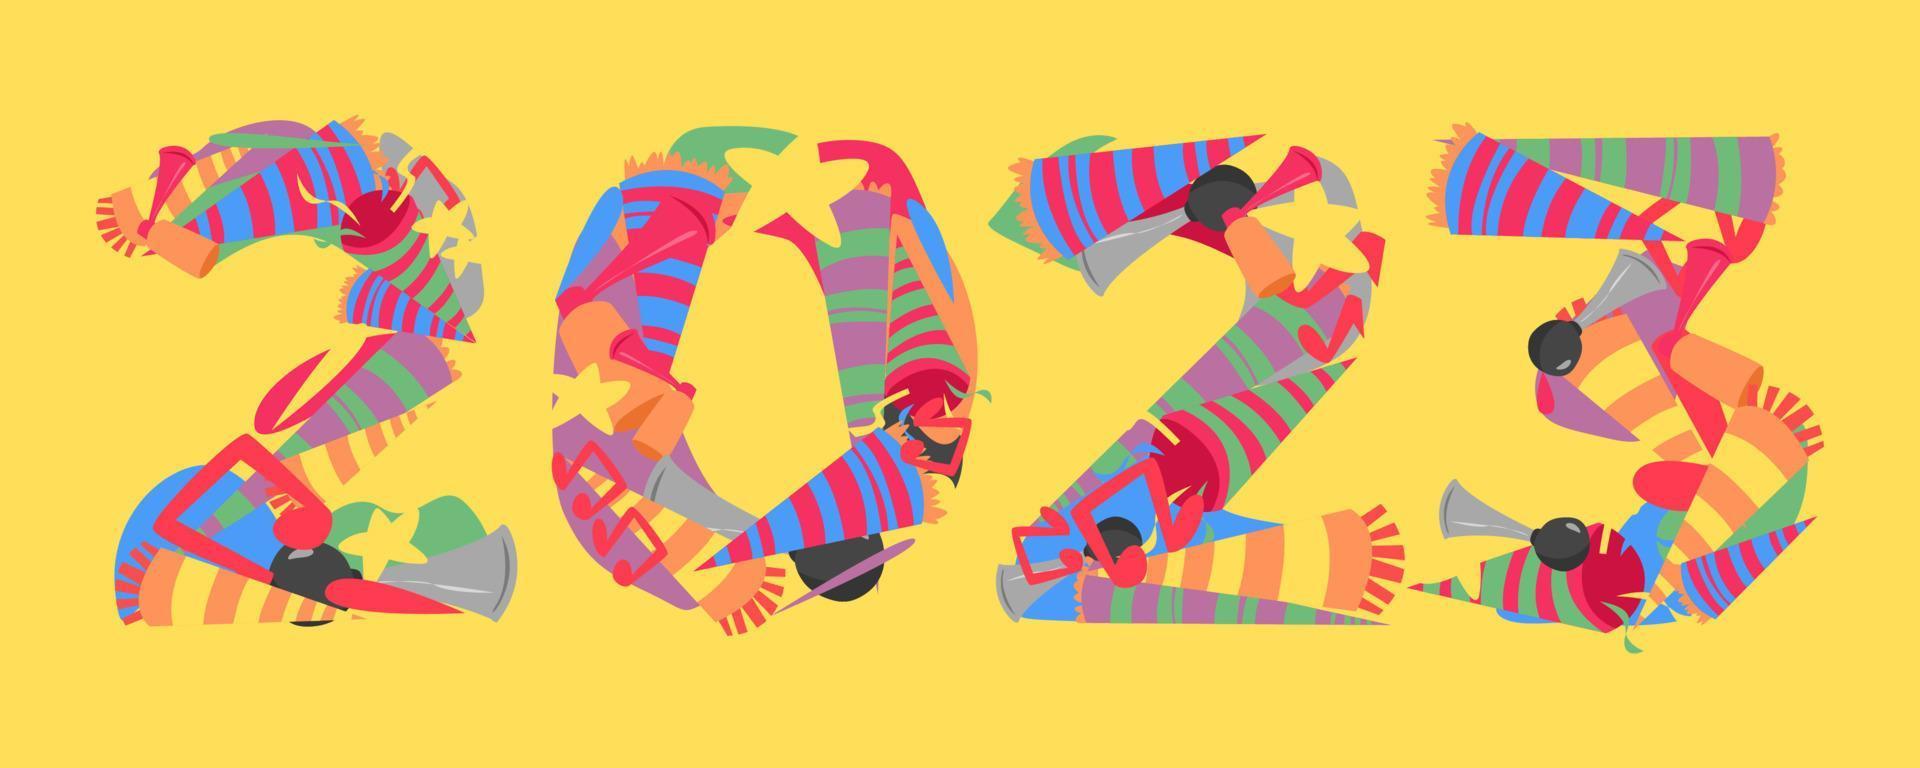 La tipografía de fuente 2023 está hecha de un conjunto de iconos de trompeta, cuerno, etc. collage de garabatos. fondo amarillo aislado. concepto de año nuevo para plantilla, tarjeta de felicitación, impresión, pegatina, banner, etc. estilo de vector plano